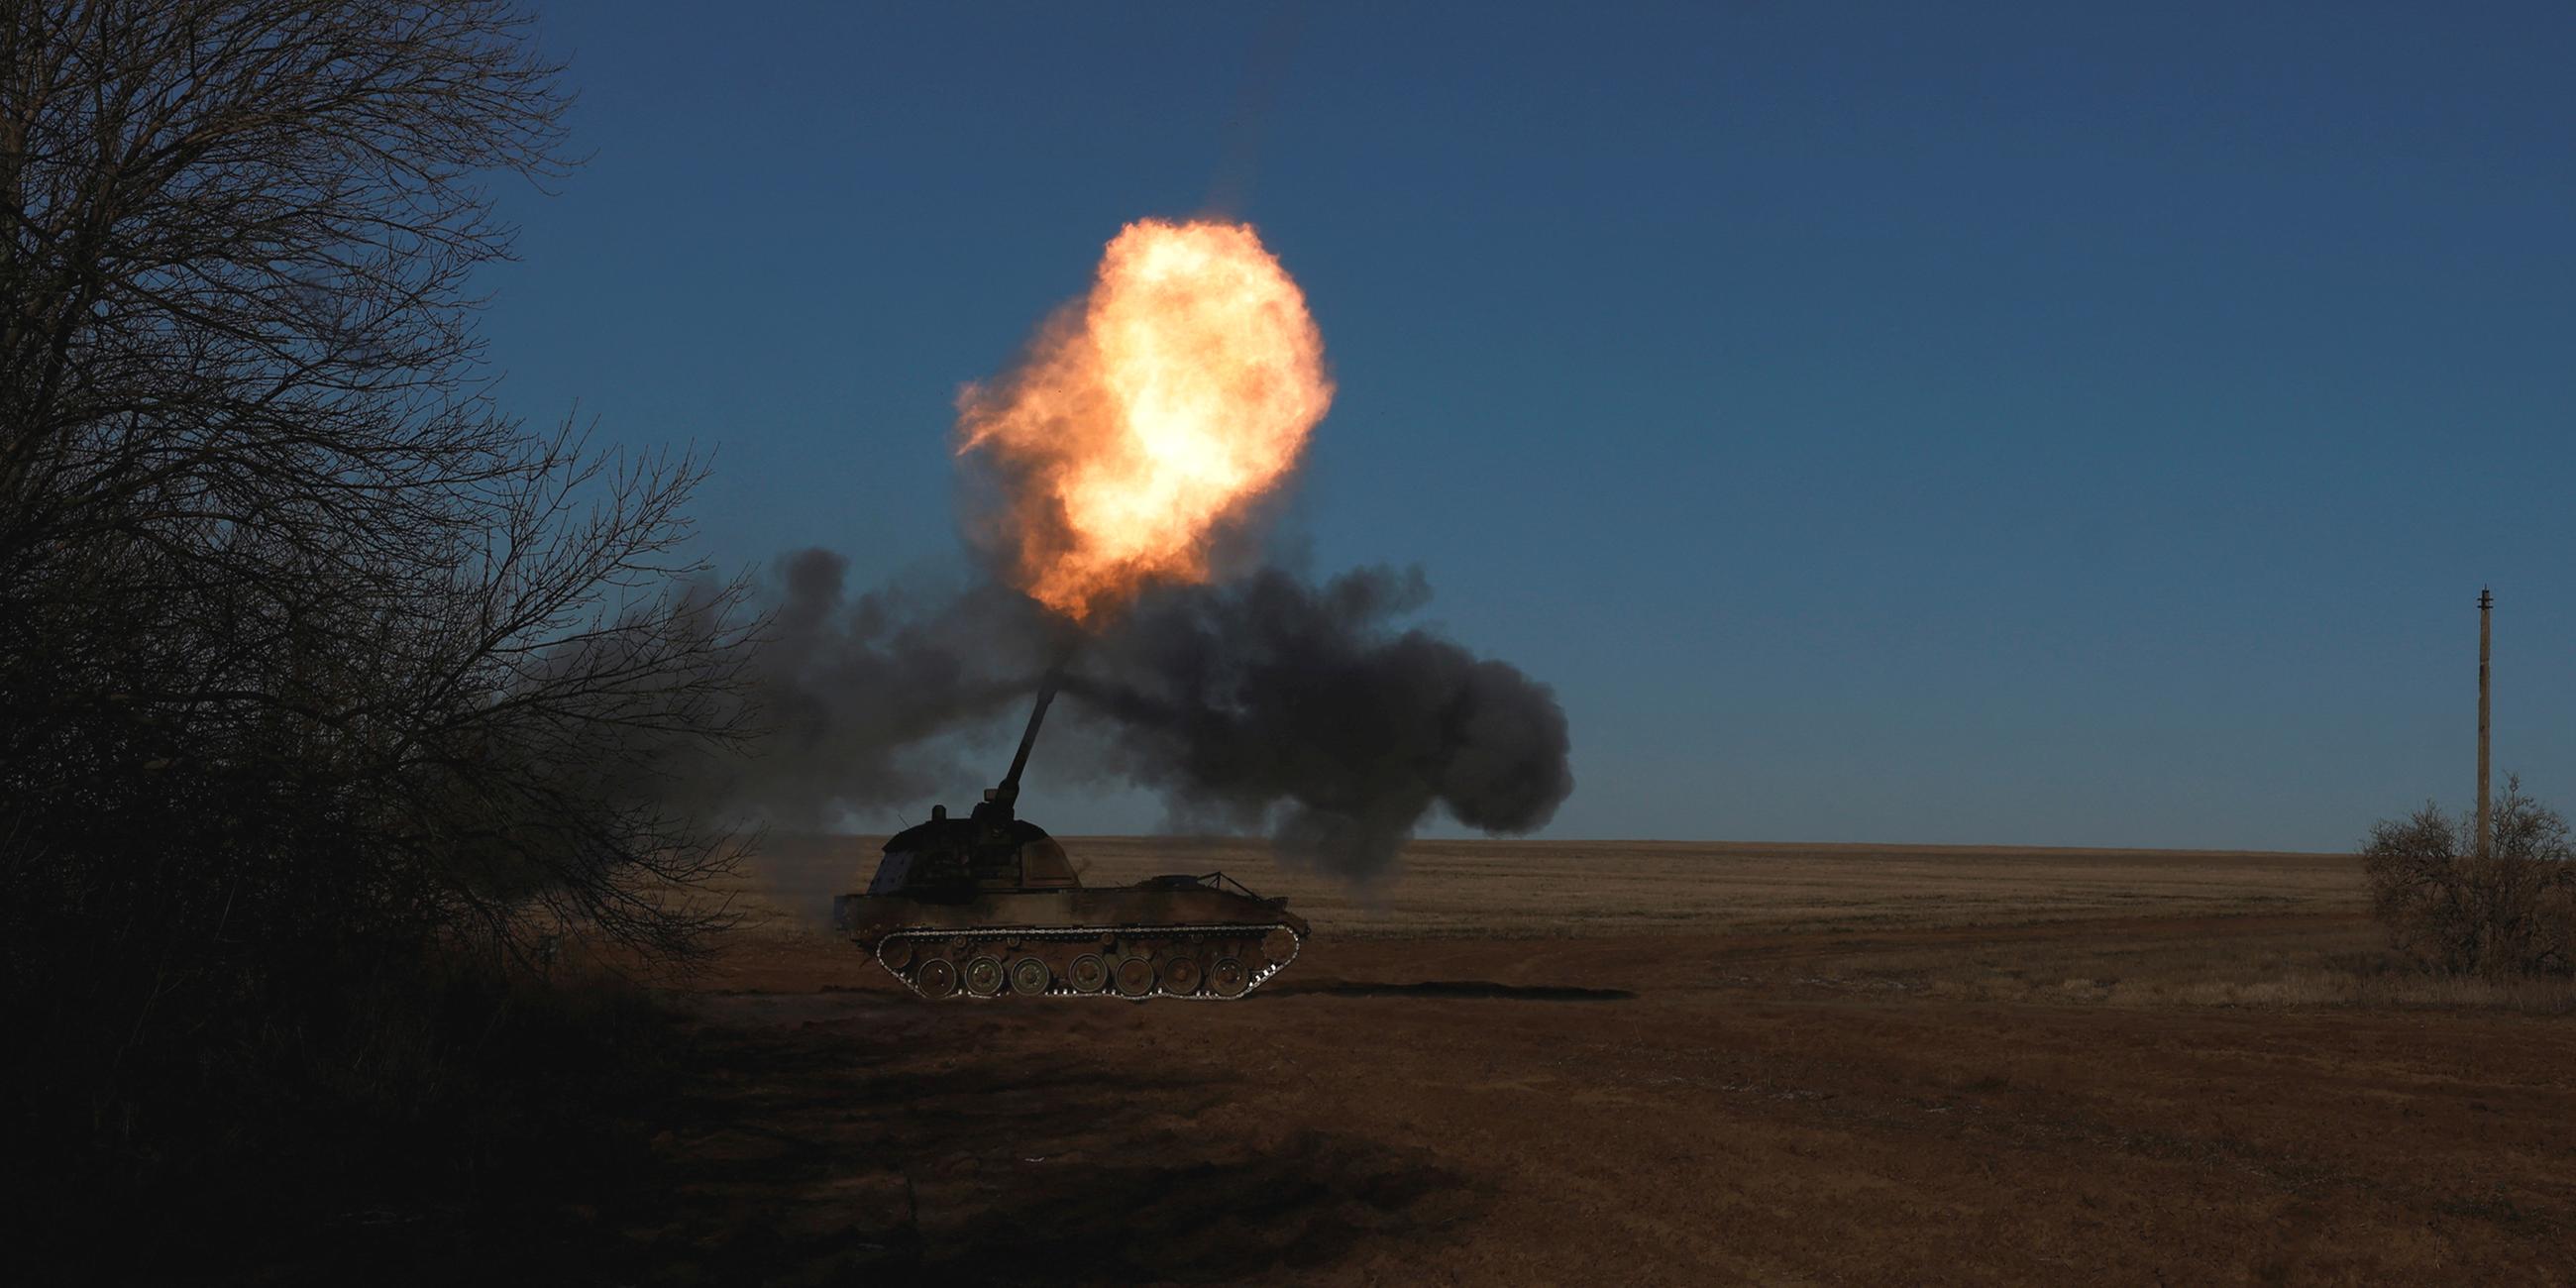 Ukrainisches Militär feuert Panzerhaubitze 2000 ab